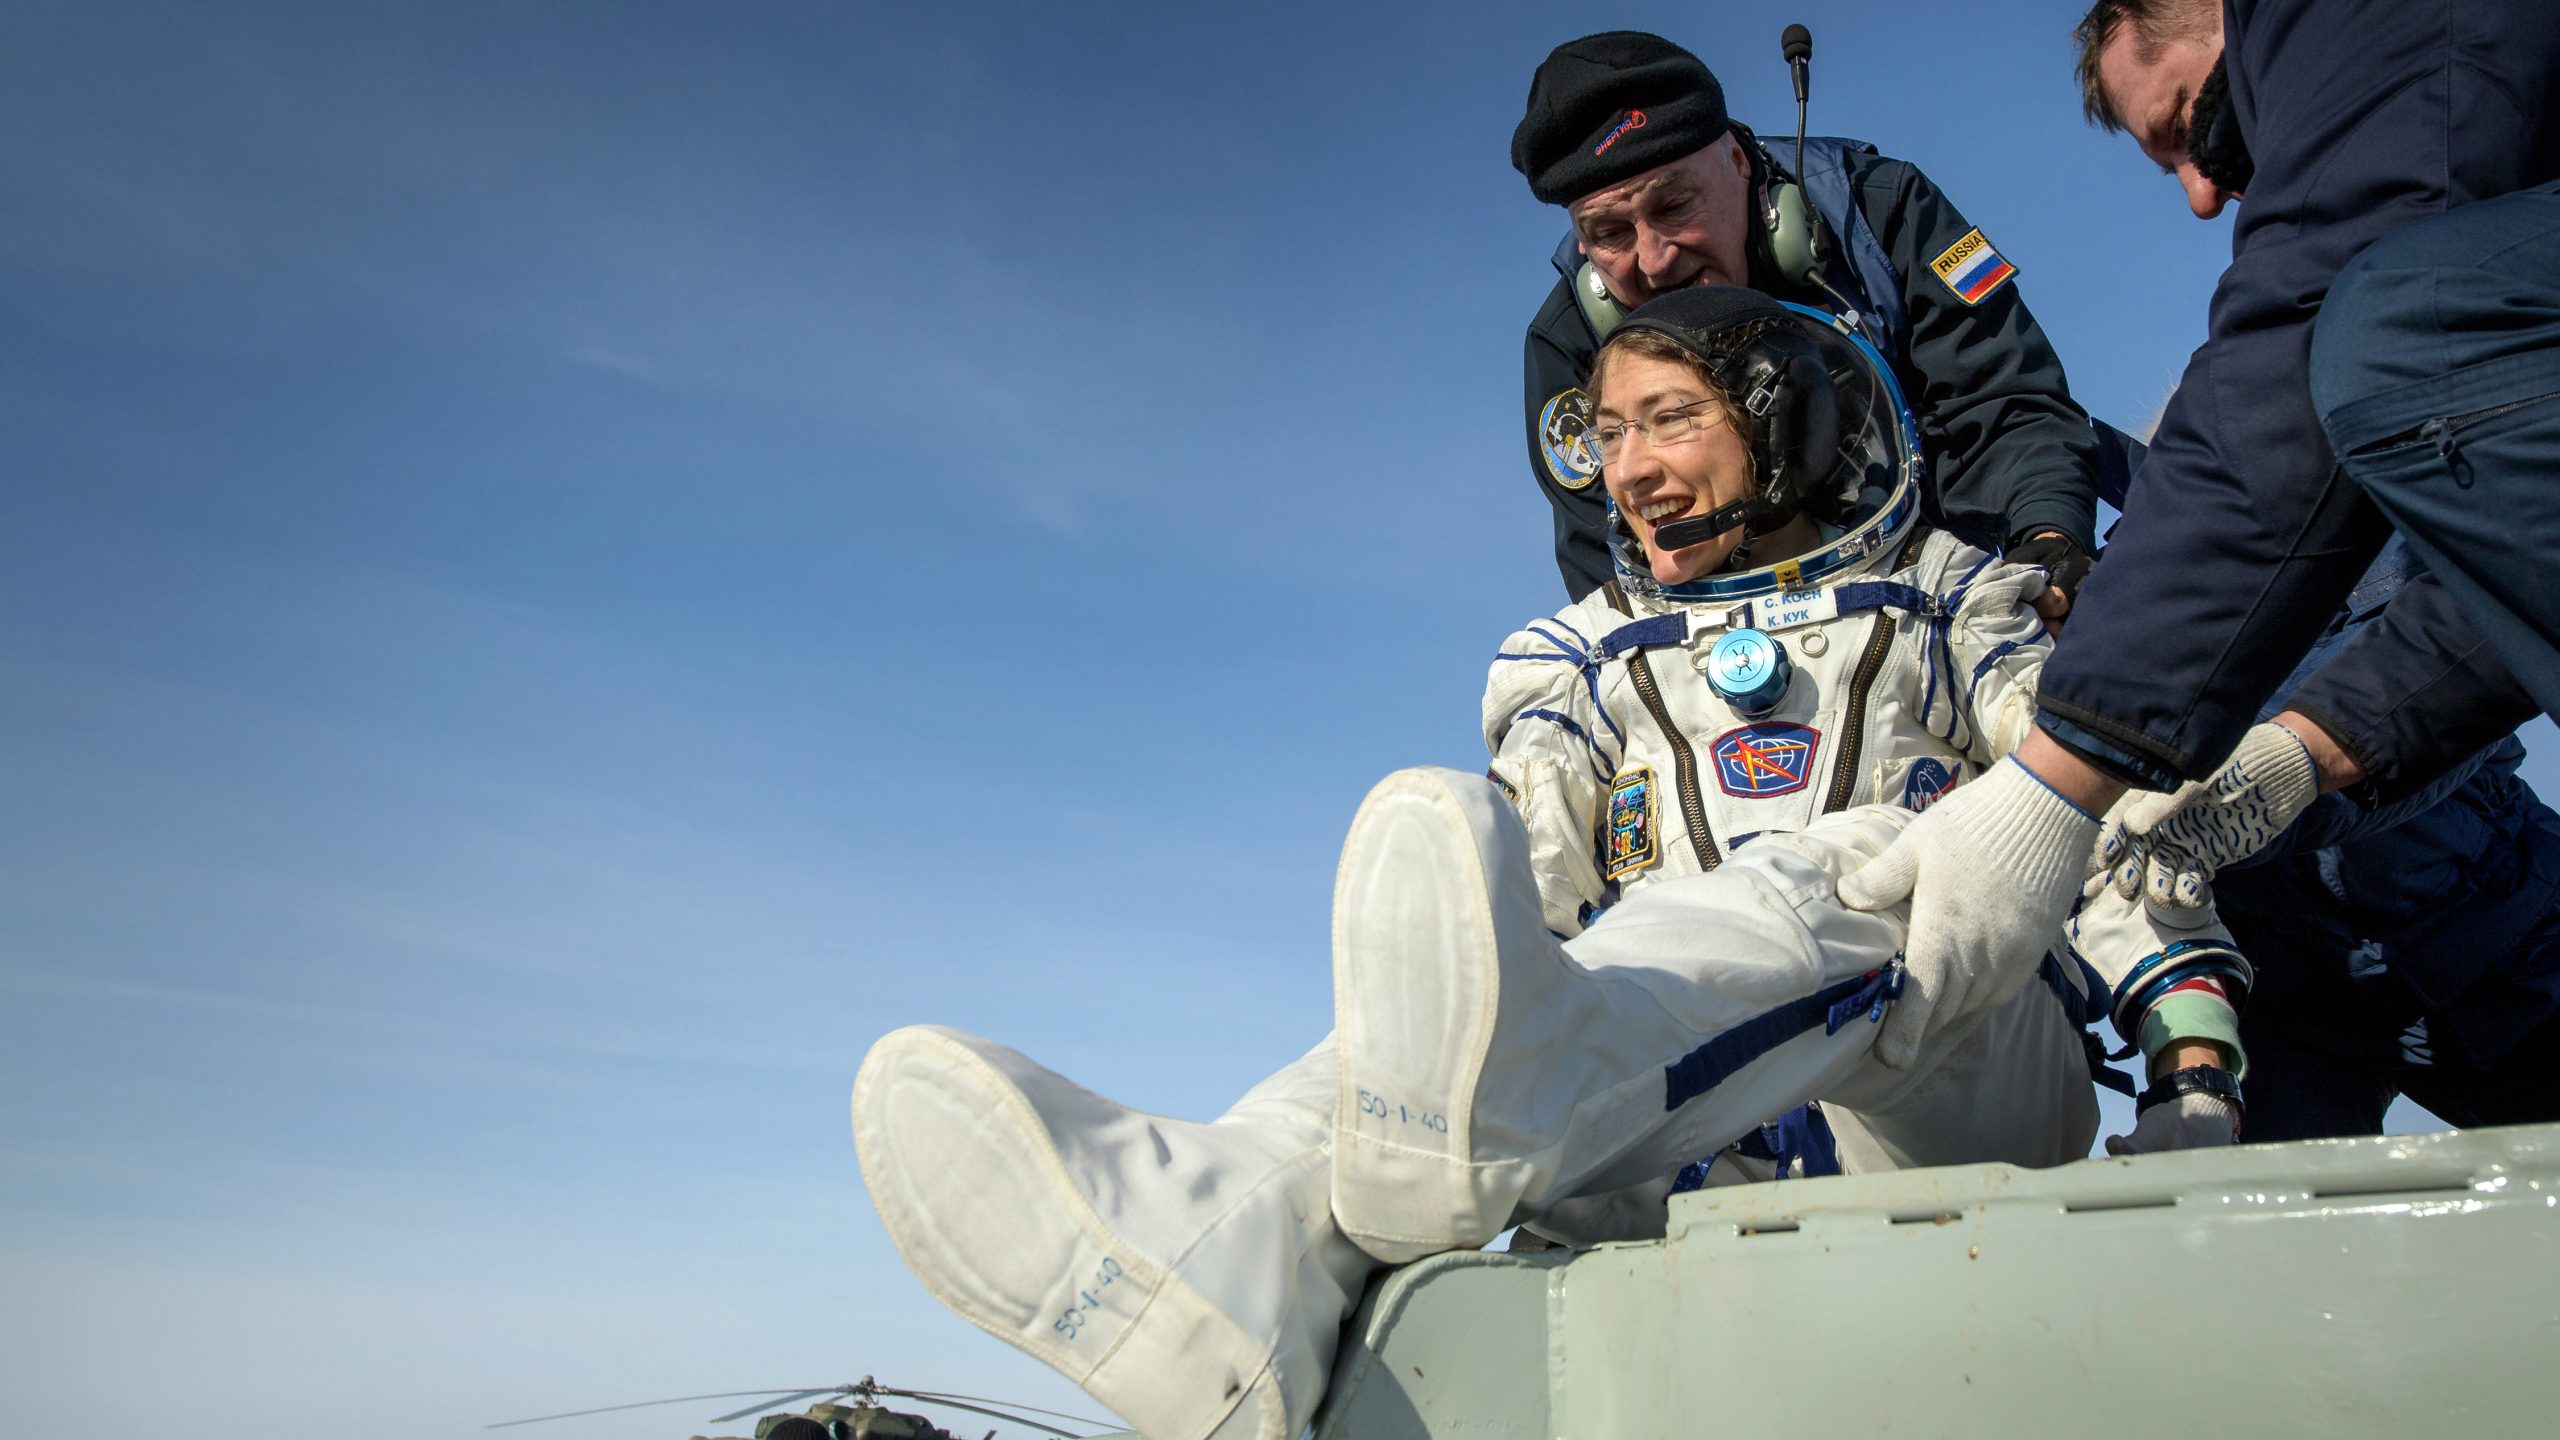 美国宇航局宇航员克里斯蒂娜·科赫在帮助下离开了联盟号MS-13宇宙飞船。